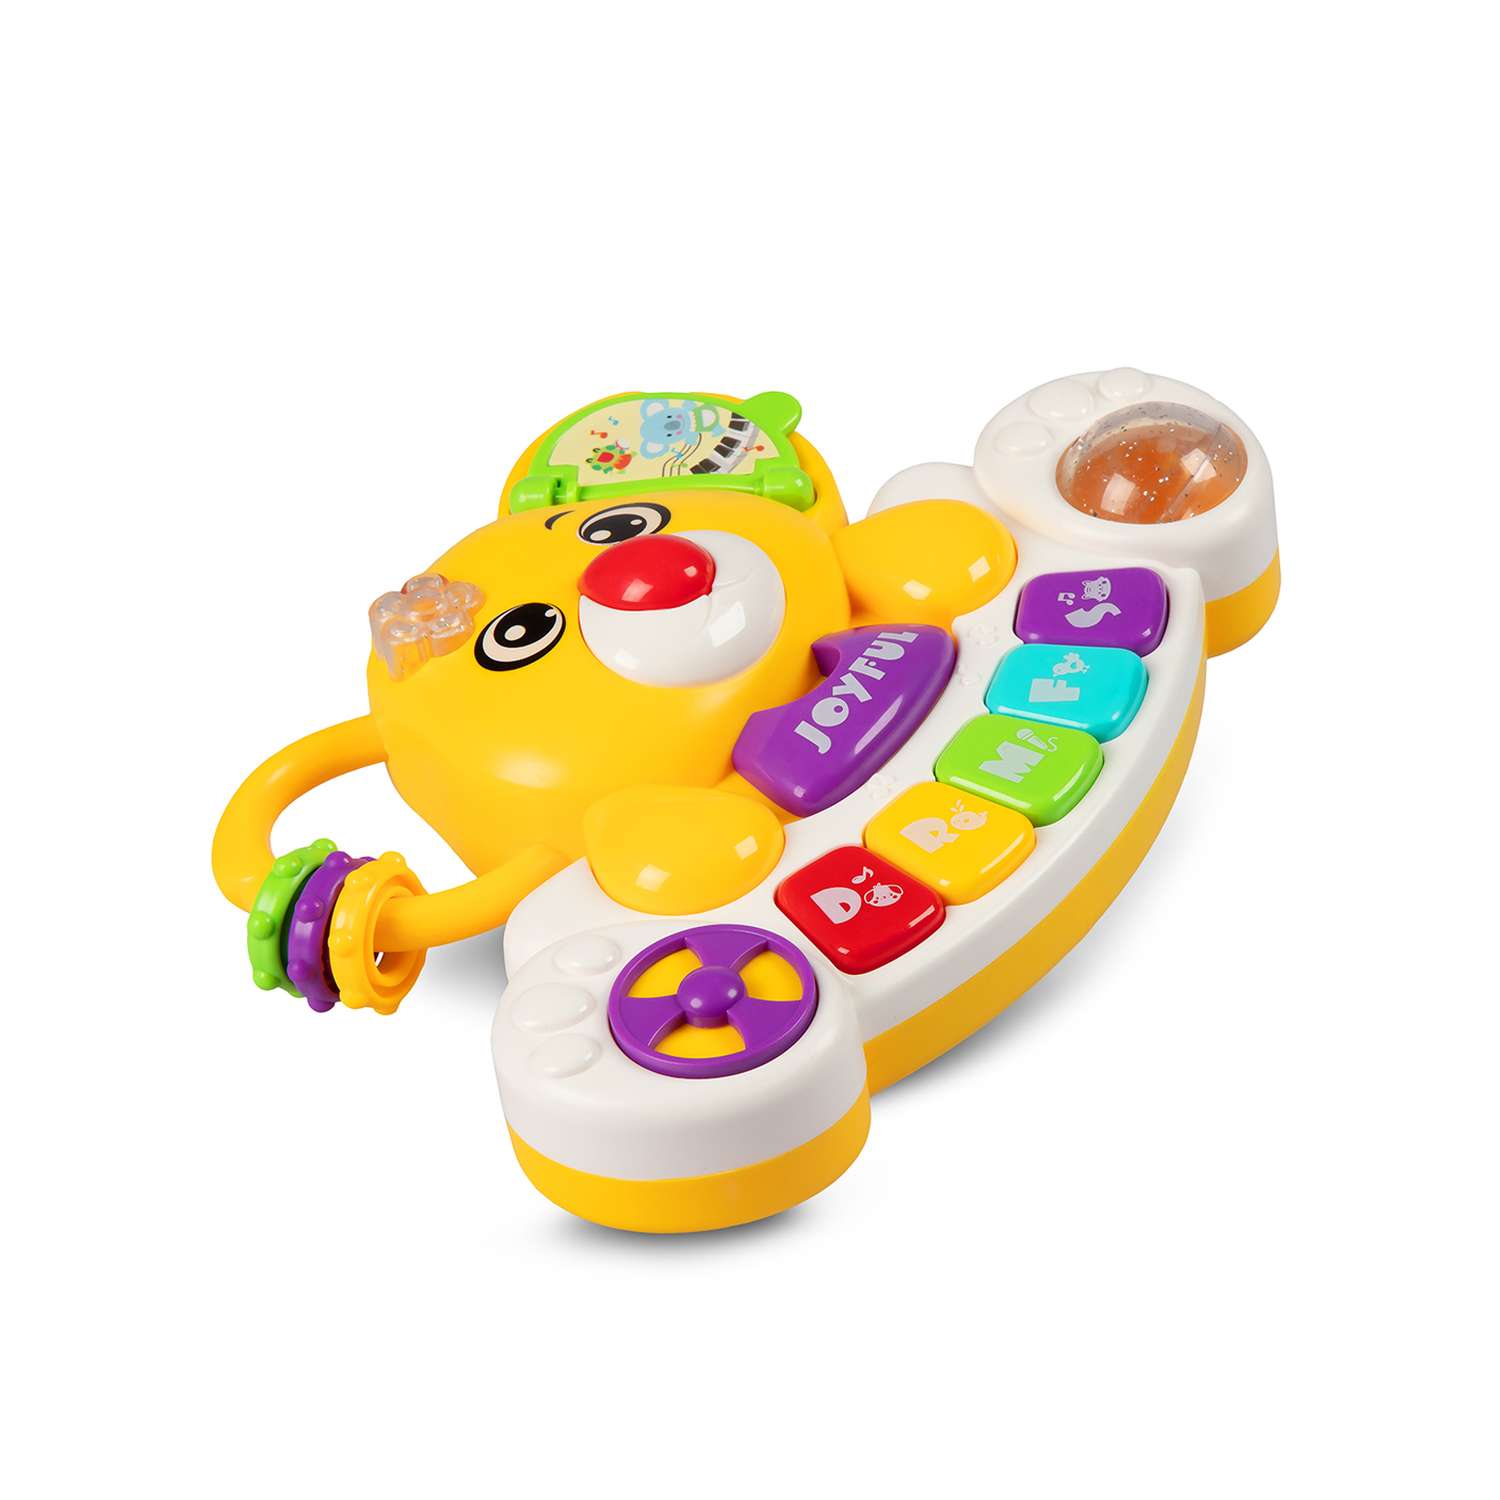 Игрушка развивающая Smart Baby Пианино обучающее Коала цвет желтый со звуковыми и световыми эффектами - фото 11